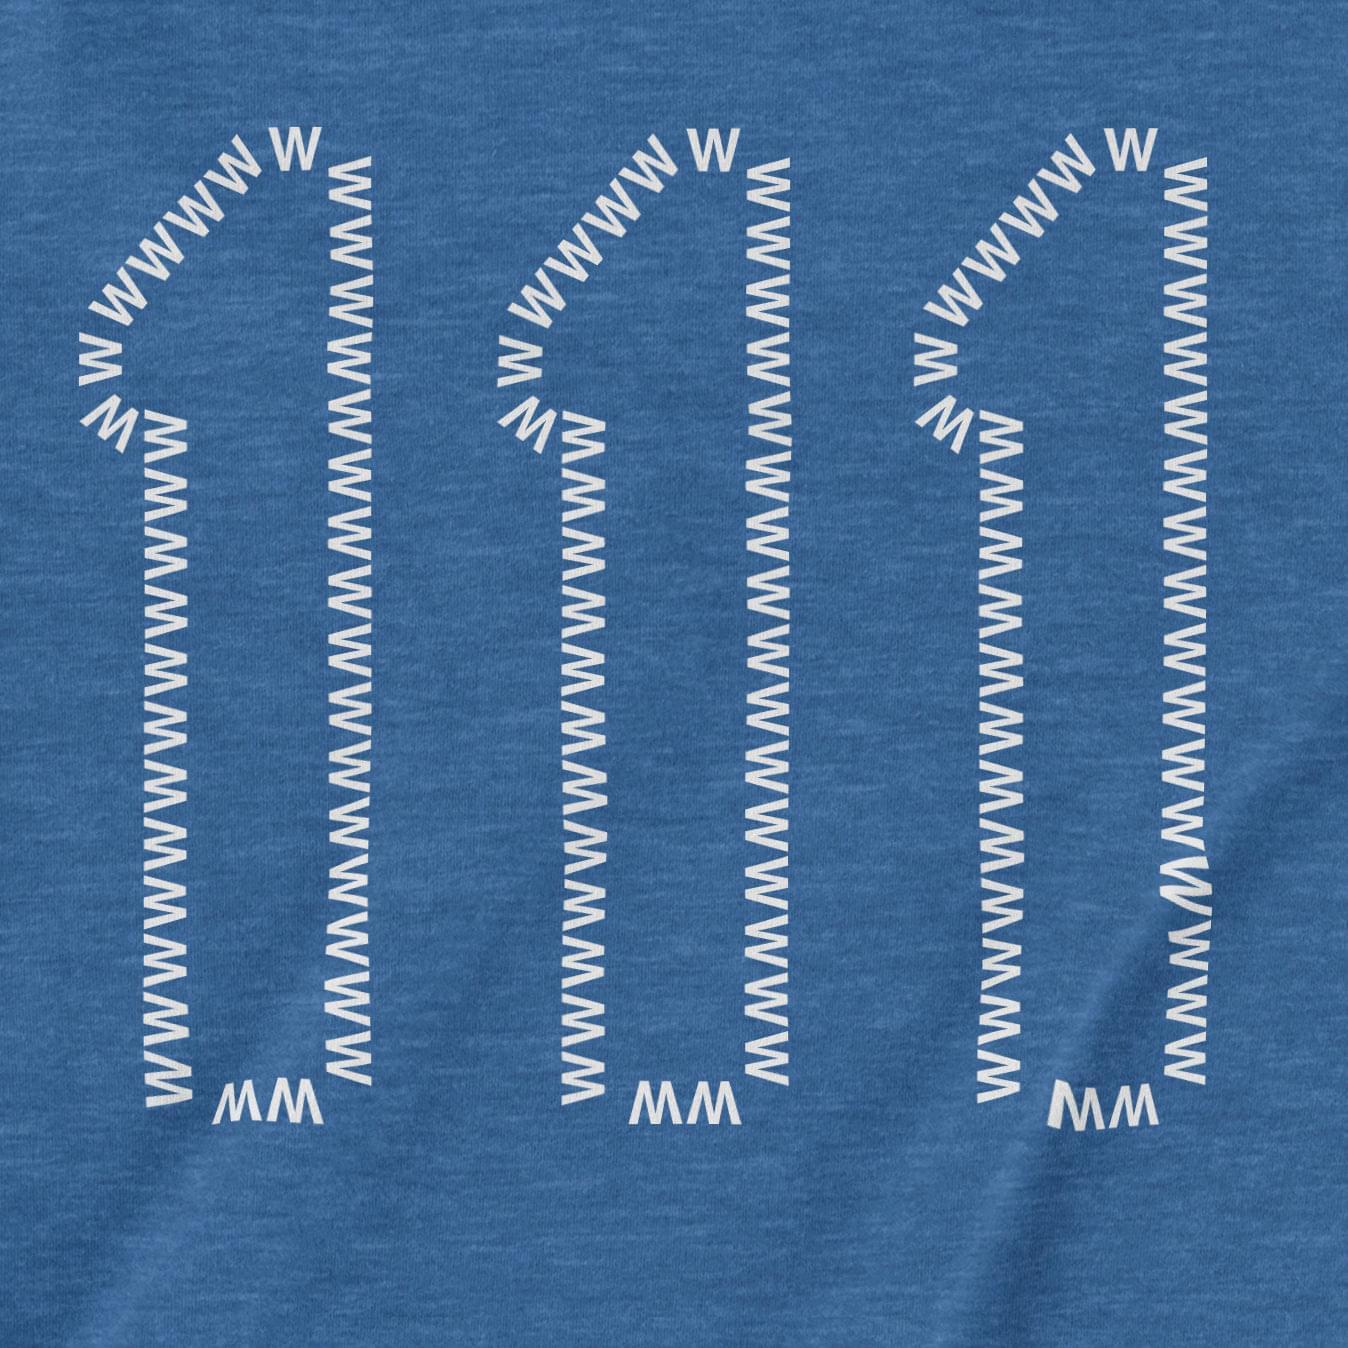 111 | T-Shirt